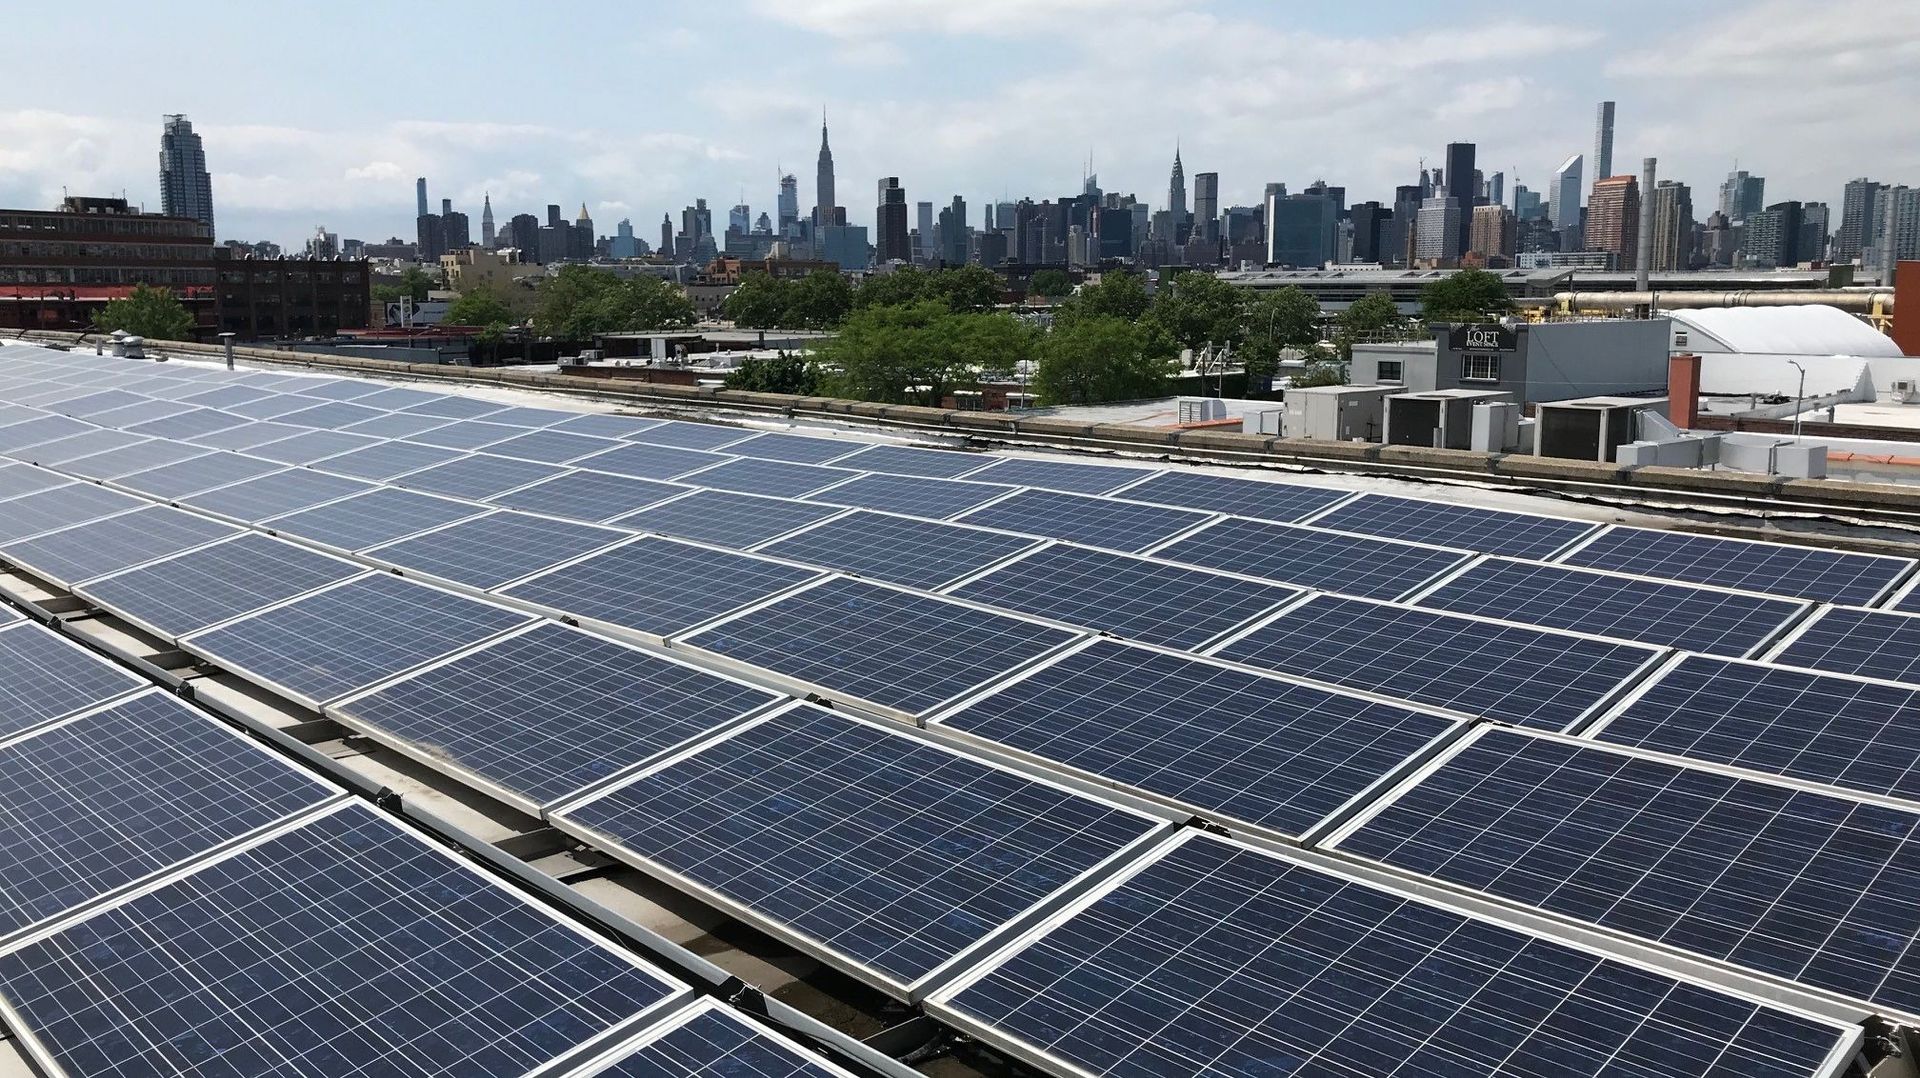 Le toit de l'immeuble de Greenpoint où se trouve une ferme de Gothams Greens est équipé de panneaux photovoltaïques.